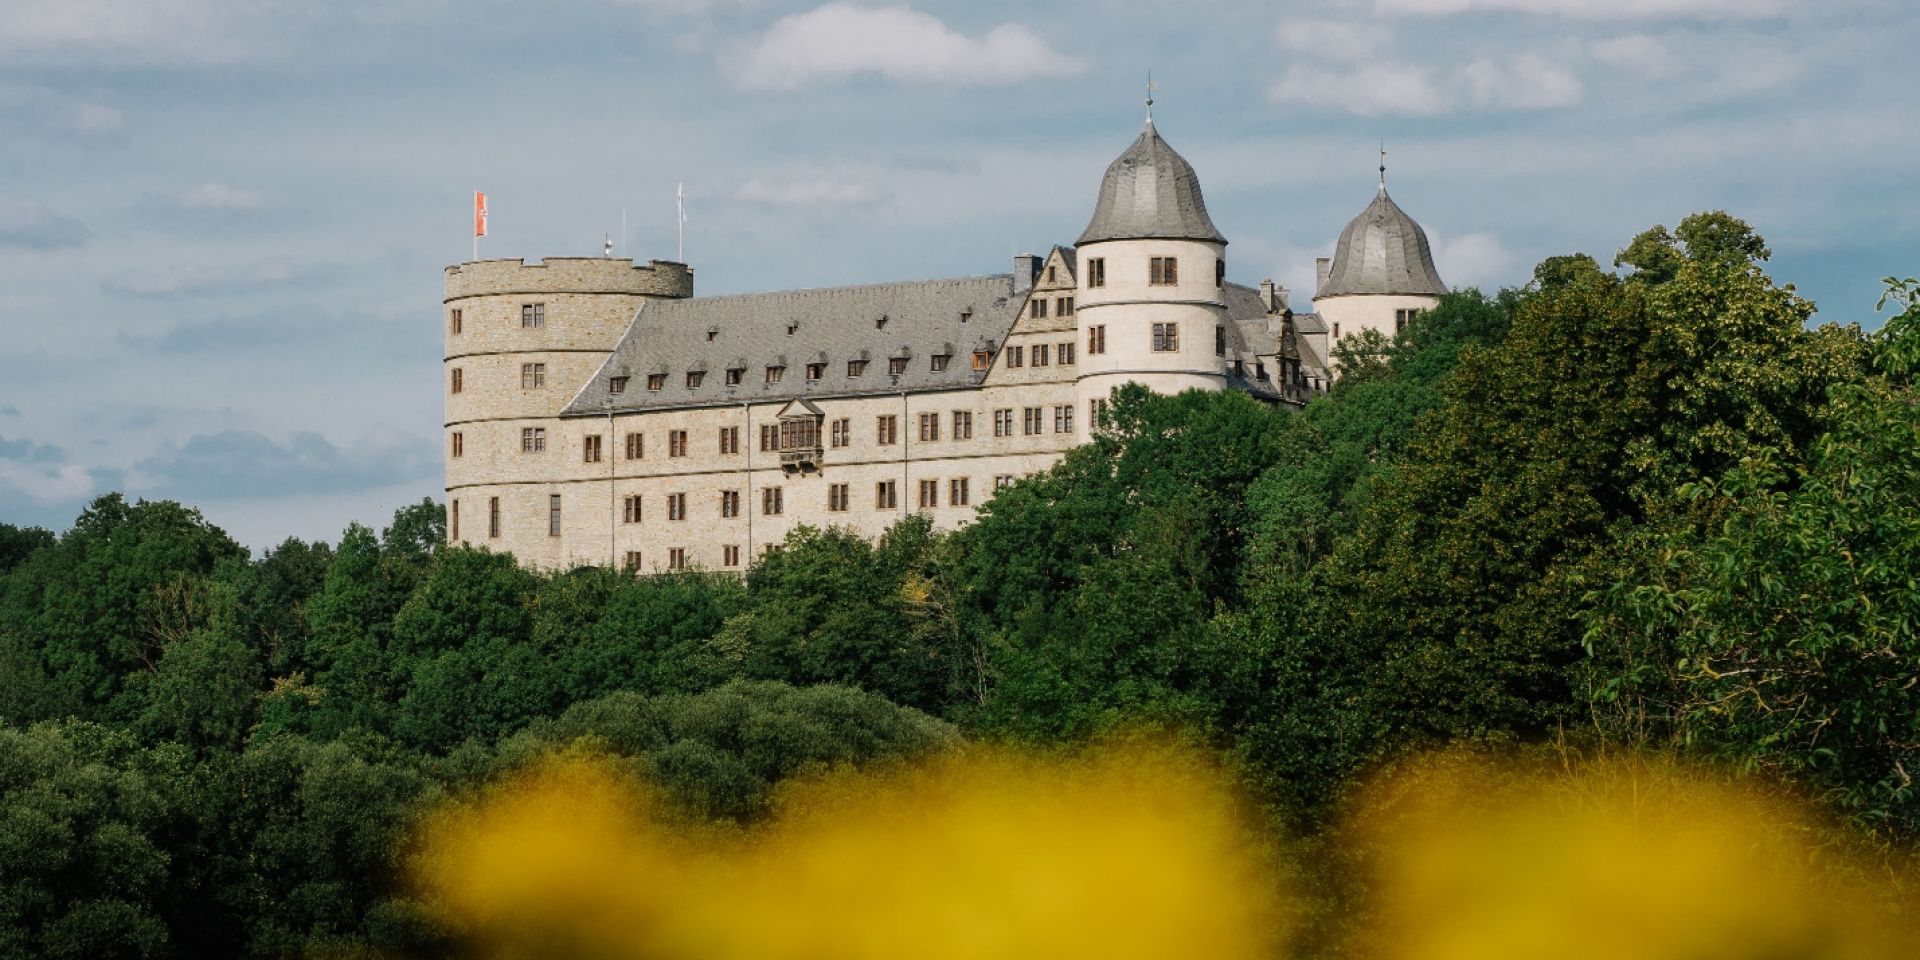 1123: Die Wewelsburg im Mittelalter | Altertumsverein Paderborn